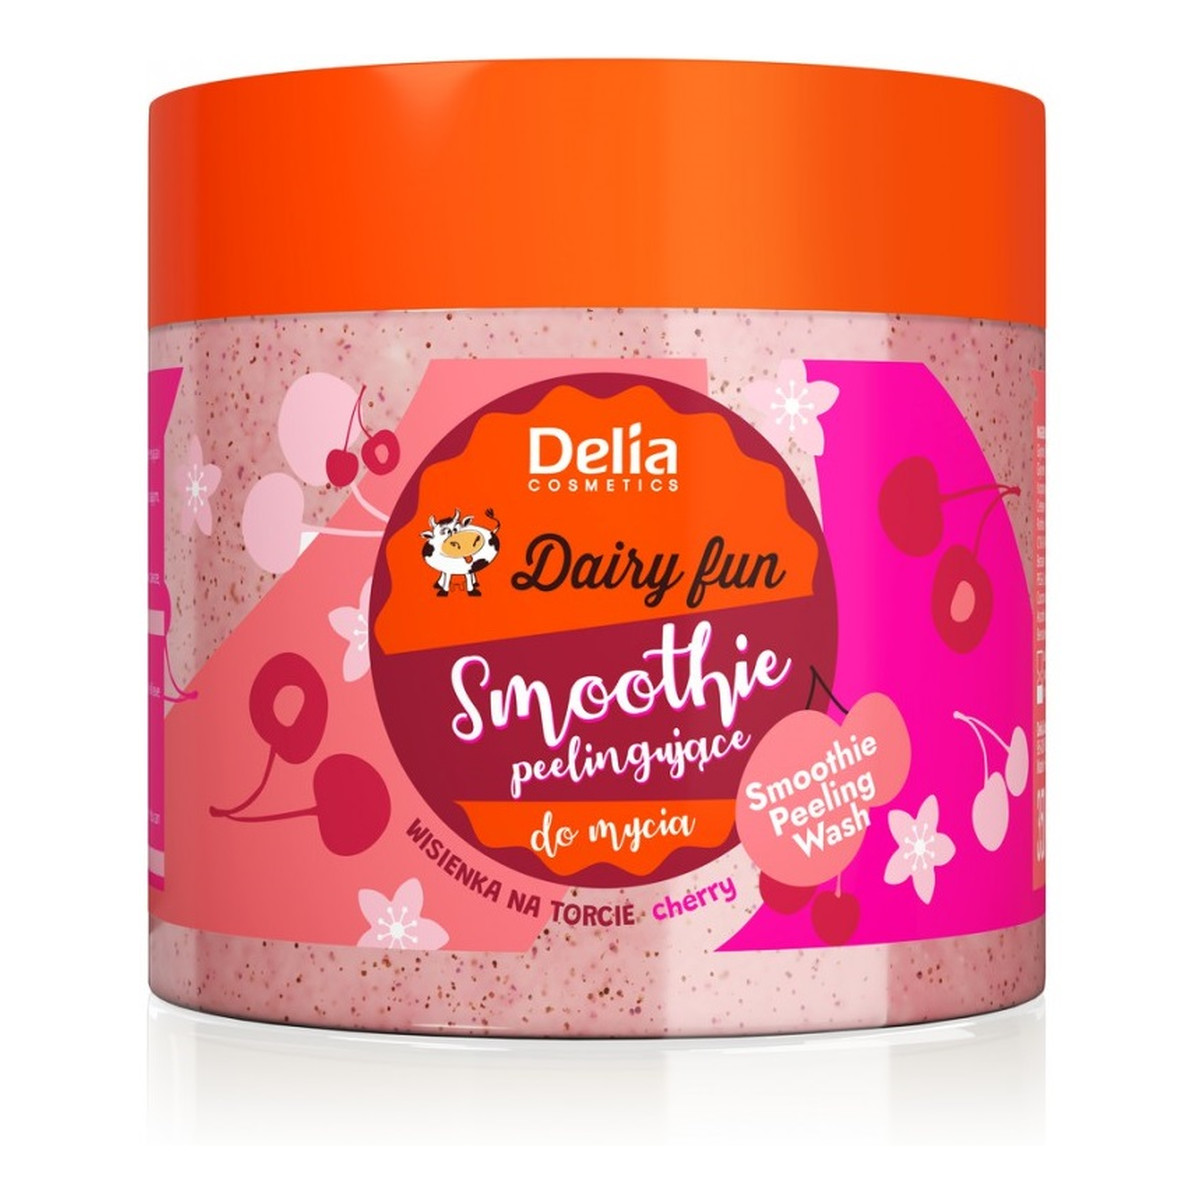 Delia Dairy Fun Peelingujące smoothie do mycia ciała Wisienka na Torcie 350ml